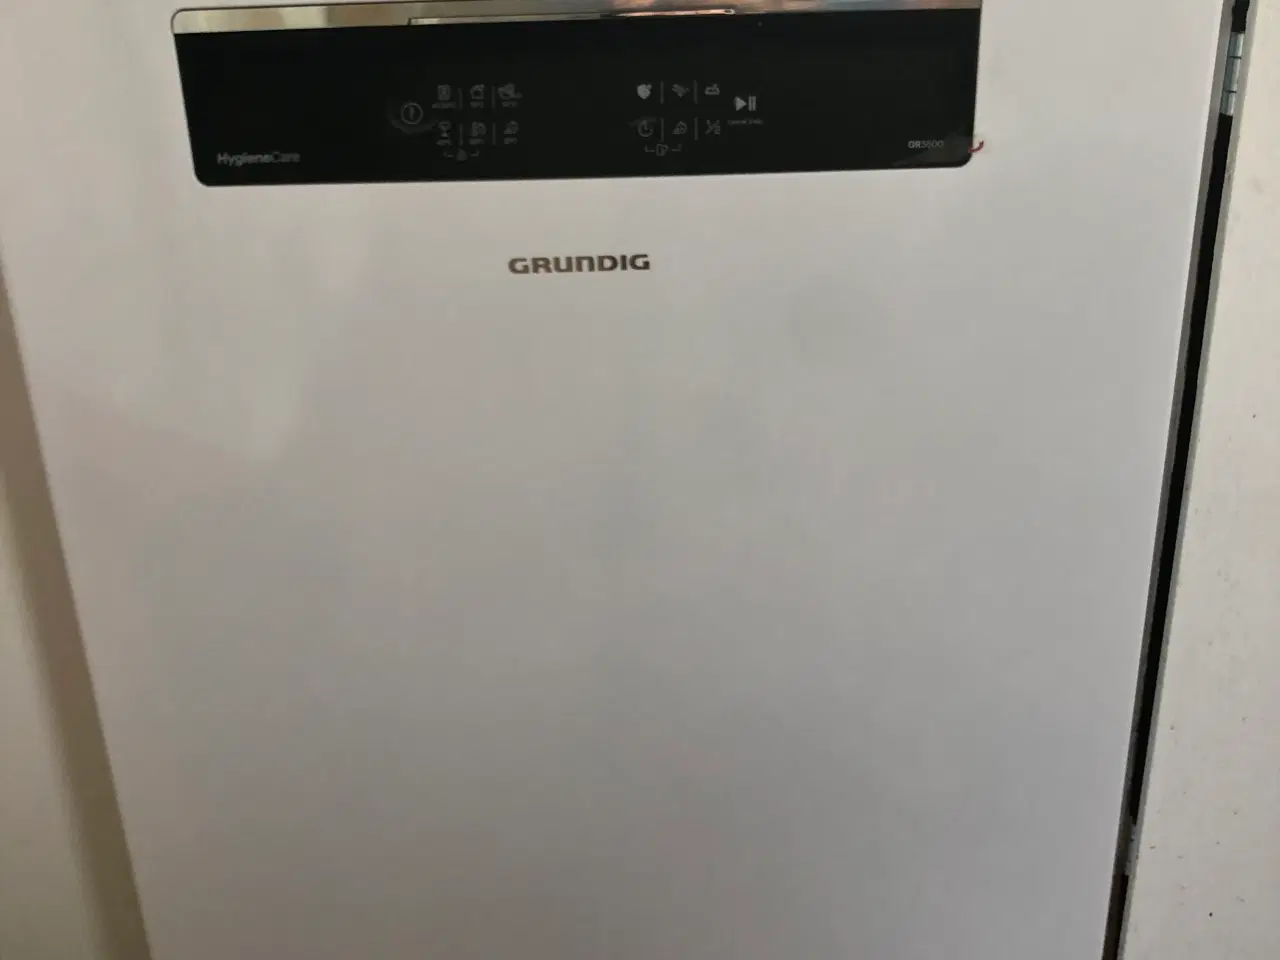 Billede 1 - Opvaskemaskine fra GRUNDIG